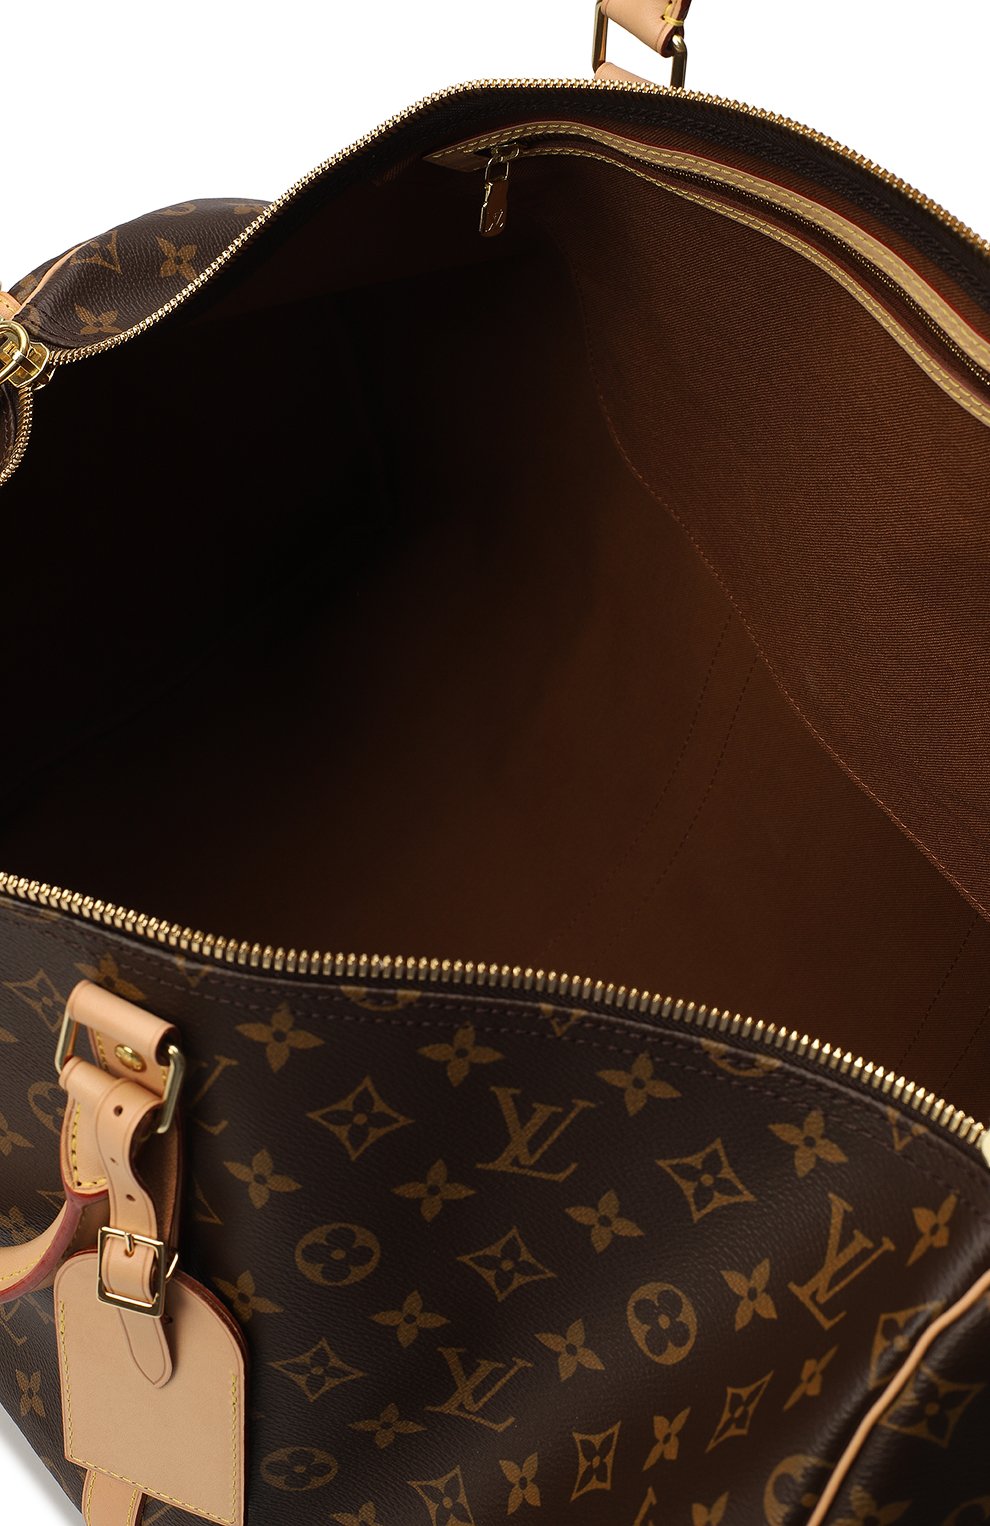 Дорожная сумка Keepall 55 | Louis Vuitton | Коричневый - 7